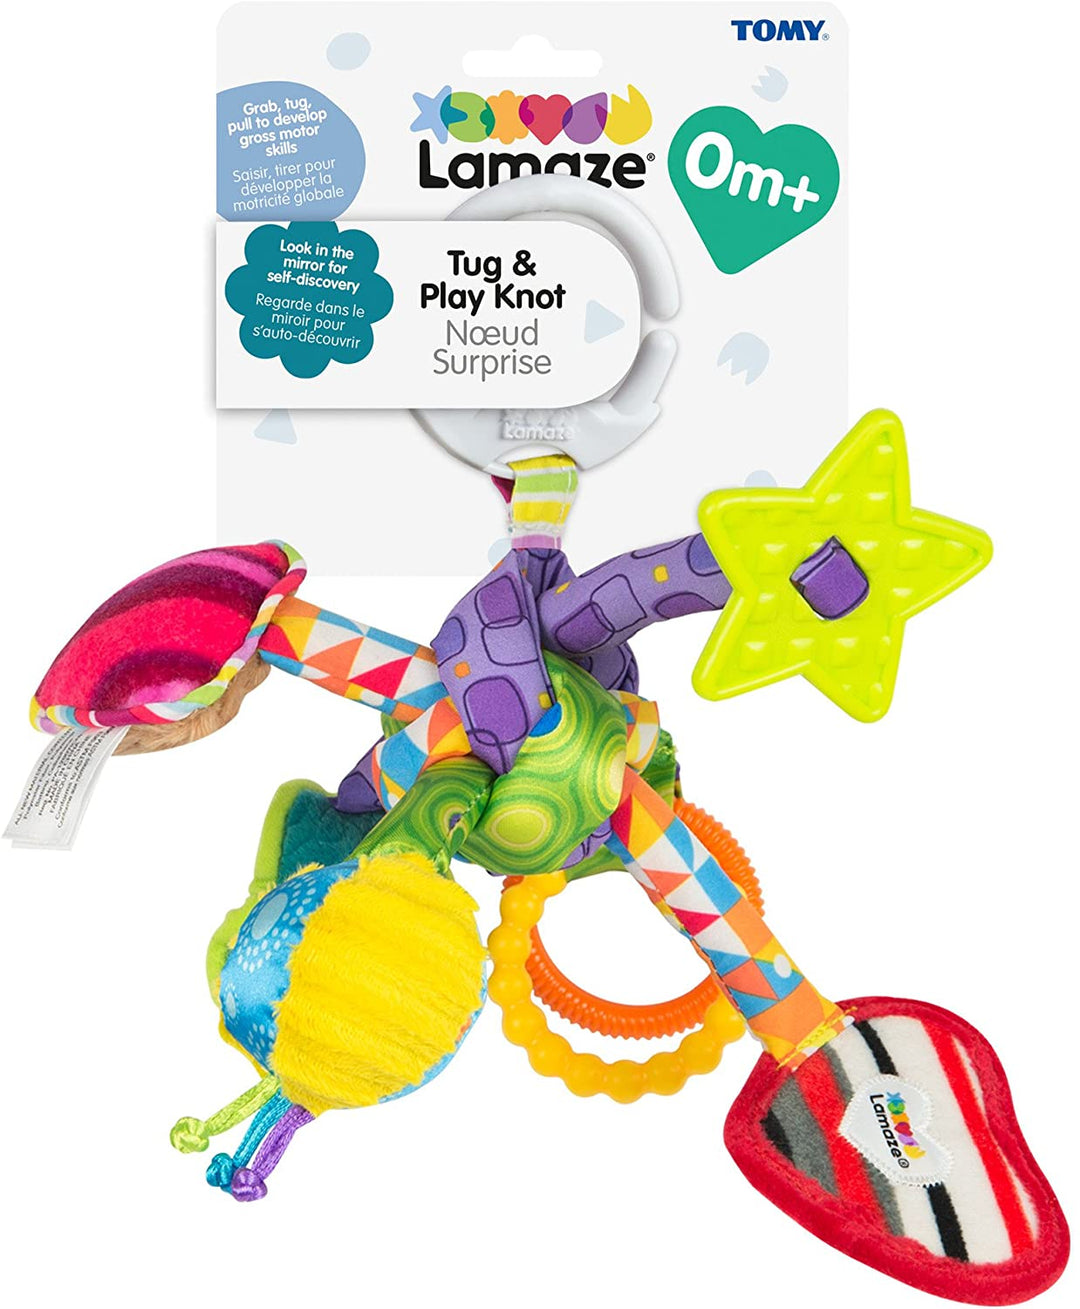 Lamaze Babyspielzeug zum Ziehen und Spielen mit Knoten, Clip-on-Spielzeug für Kinderwagen und Kinderwagen, ideales Geschenk zur Babyparty für frischgebackene Eltern, sensorisches Spiel für Babys, Jungen und Mädchen von 0–6 Monaten